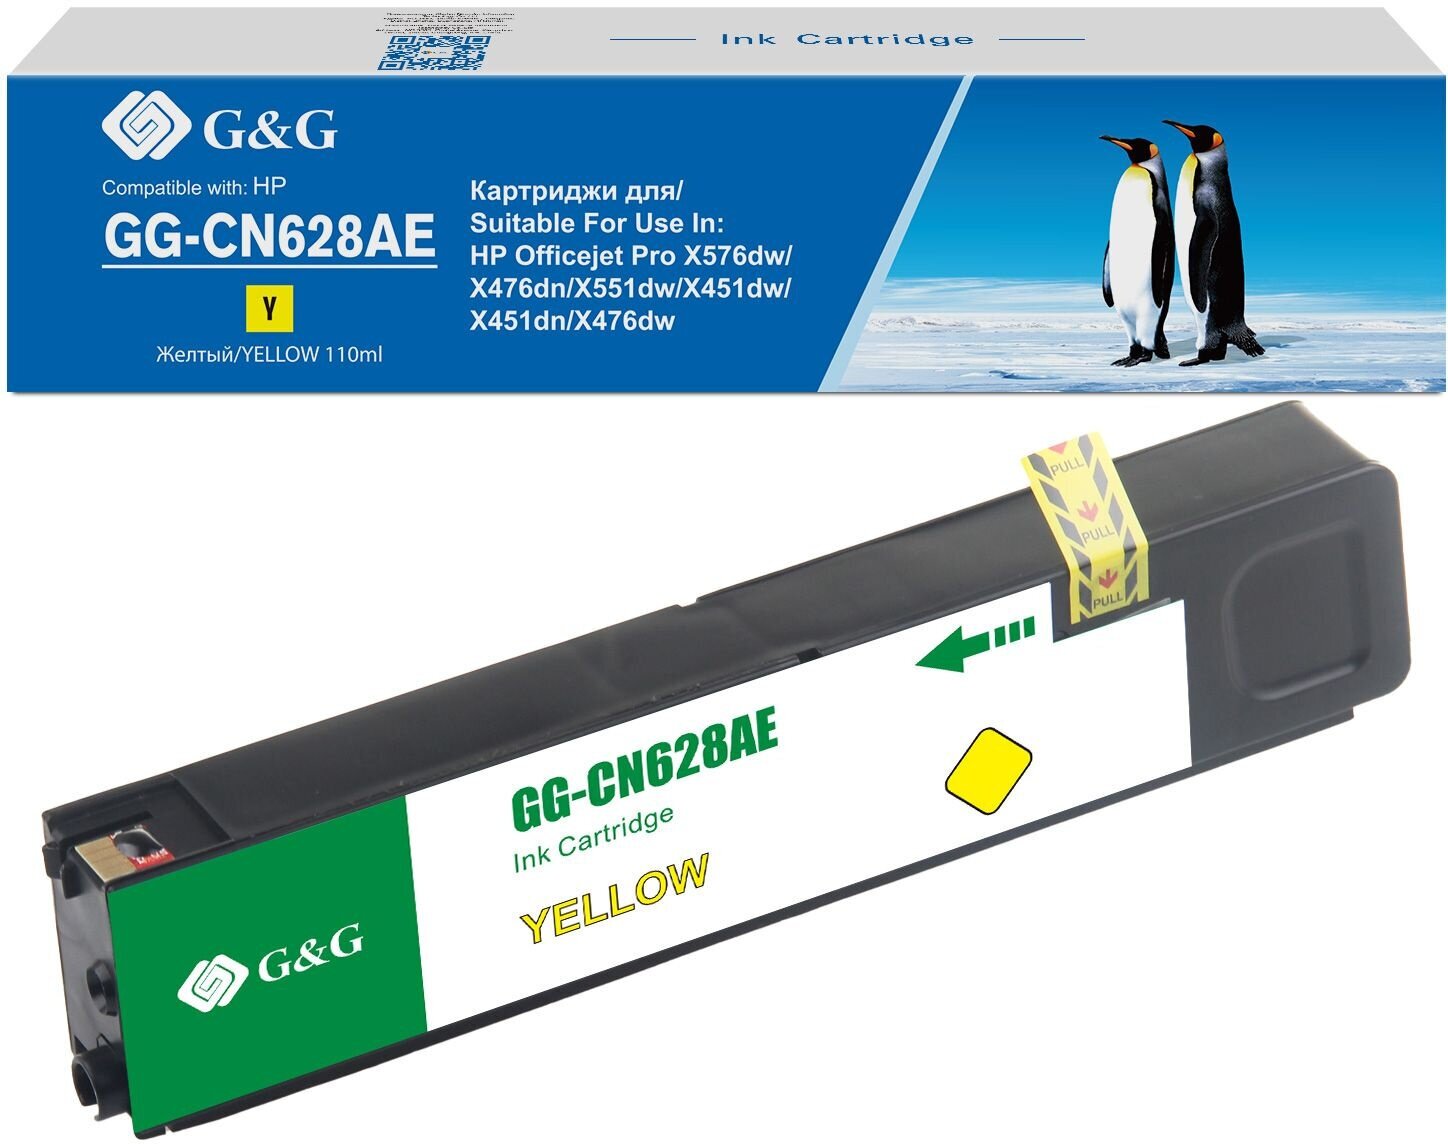 Картридж G&G струйный желтый (110мл) для HP Officejet Pro X576dw/X476dn/X551dw/X451dw - фото №4